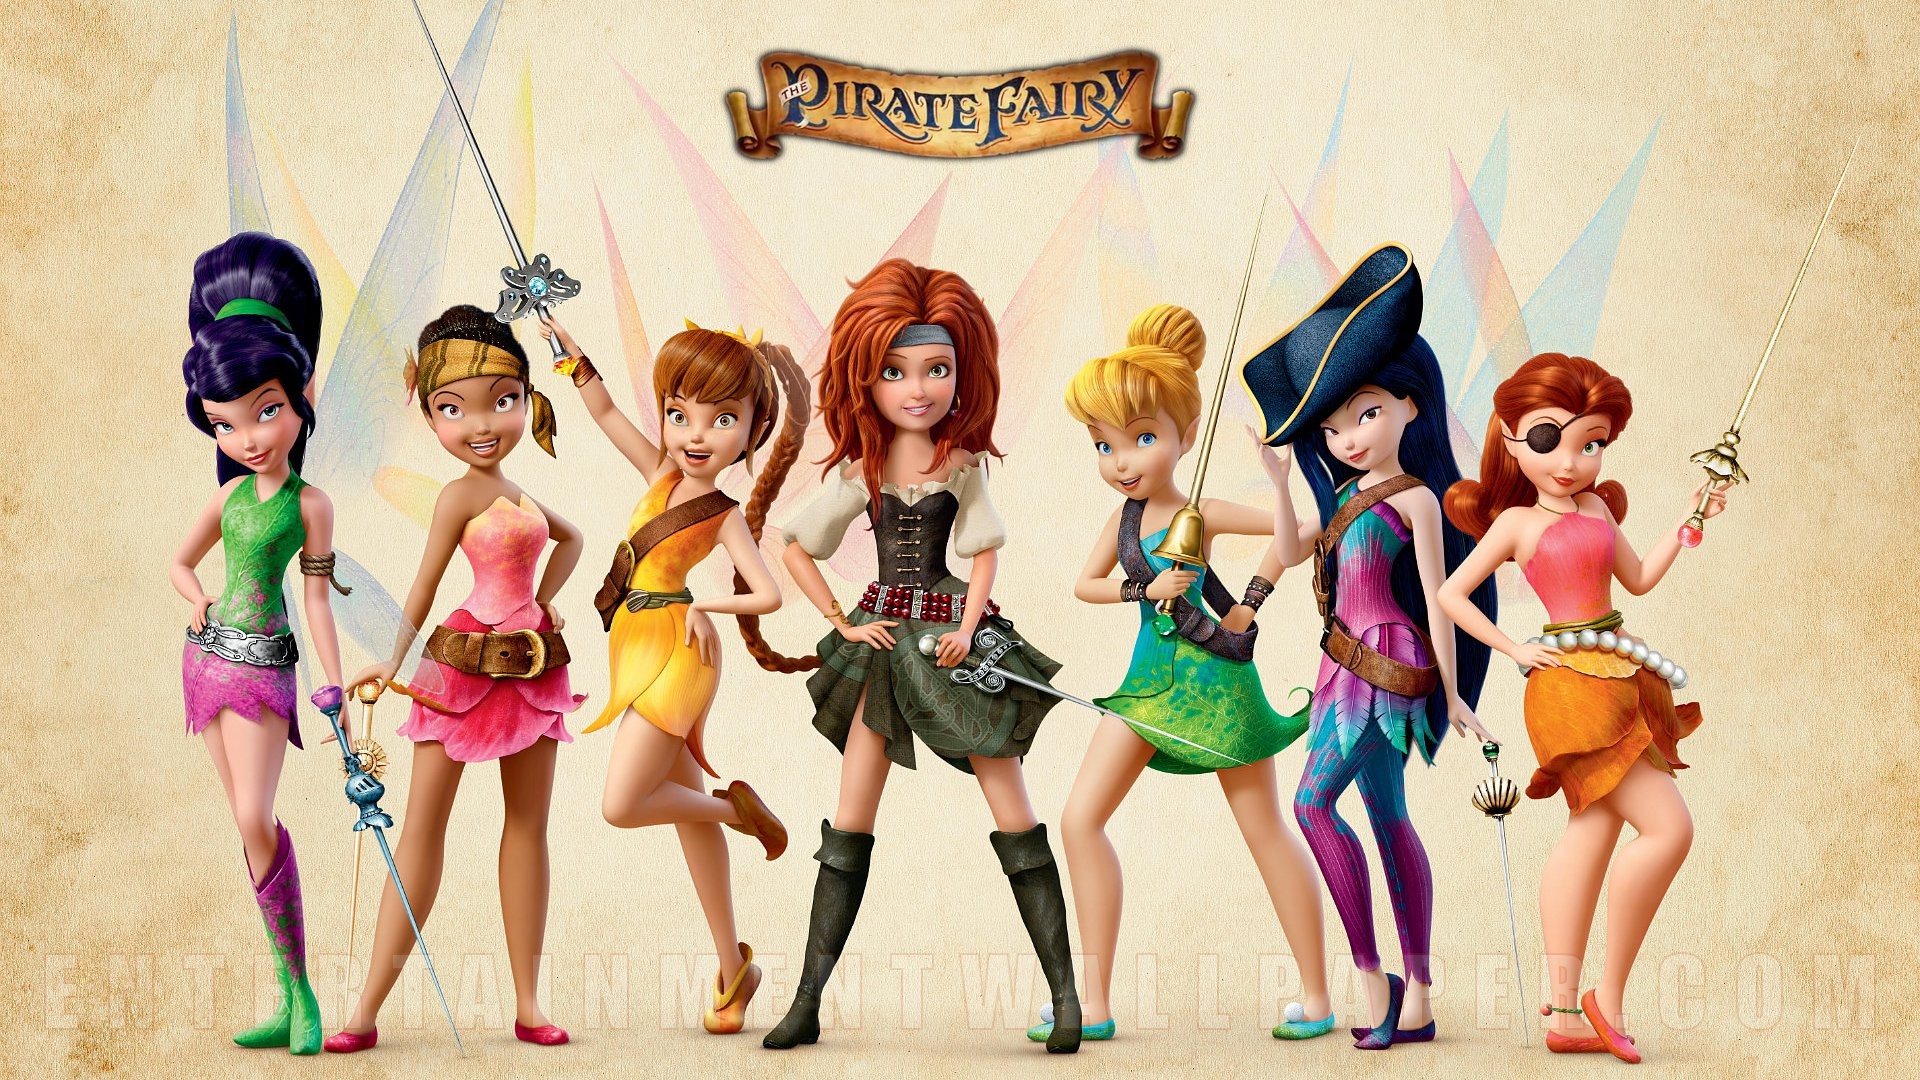 The Pirate Fairy Disney Fairies High